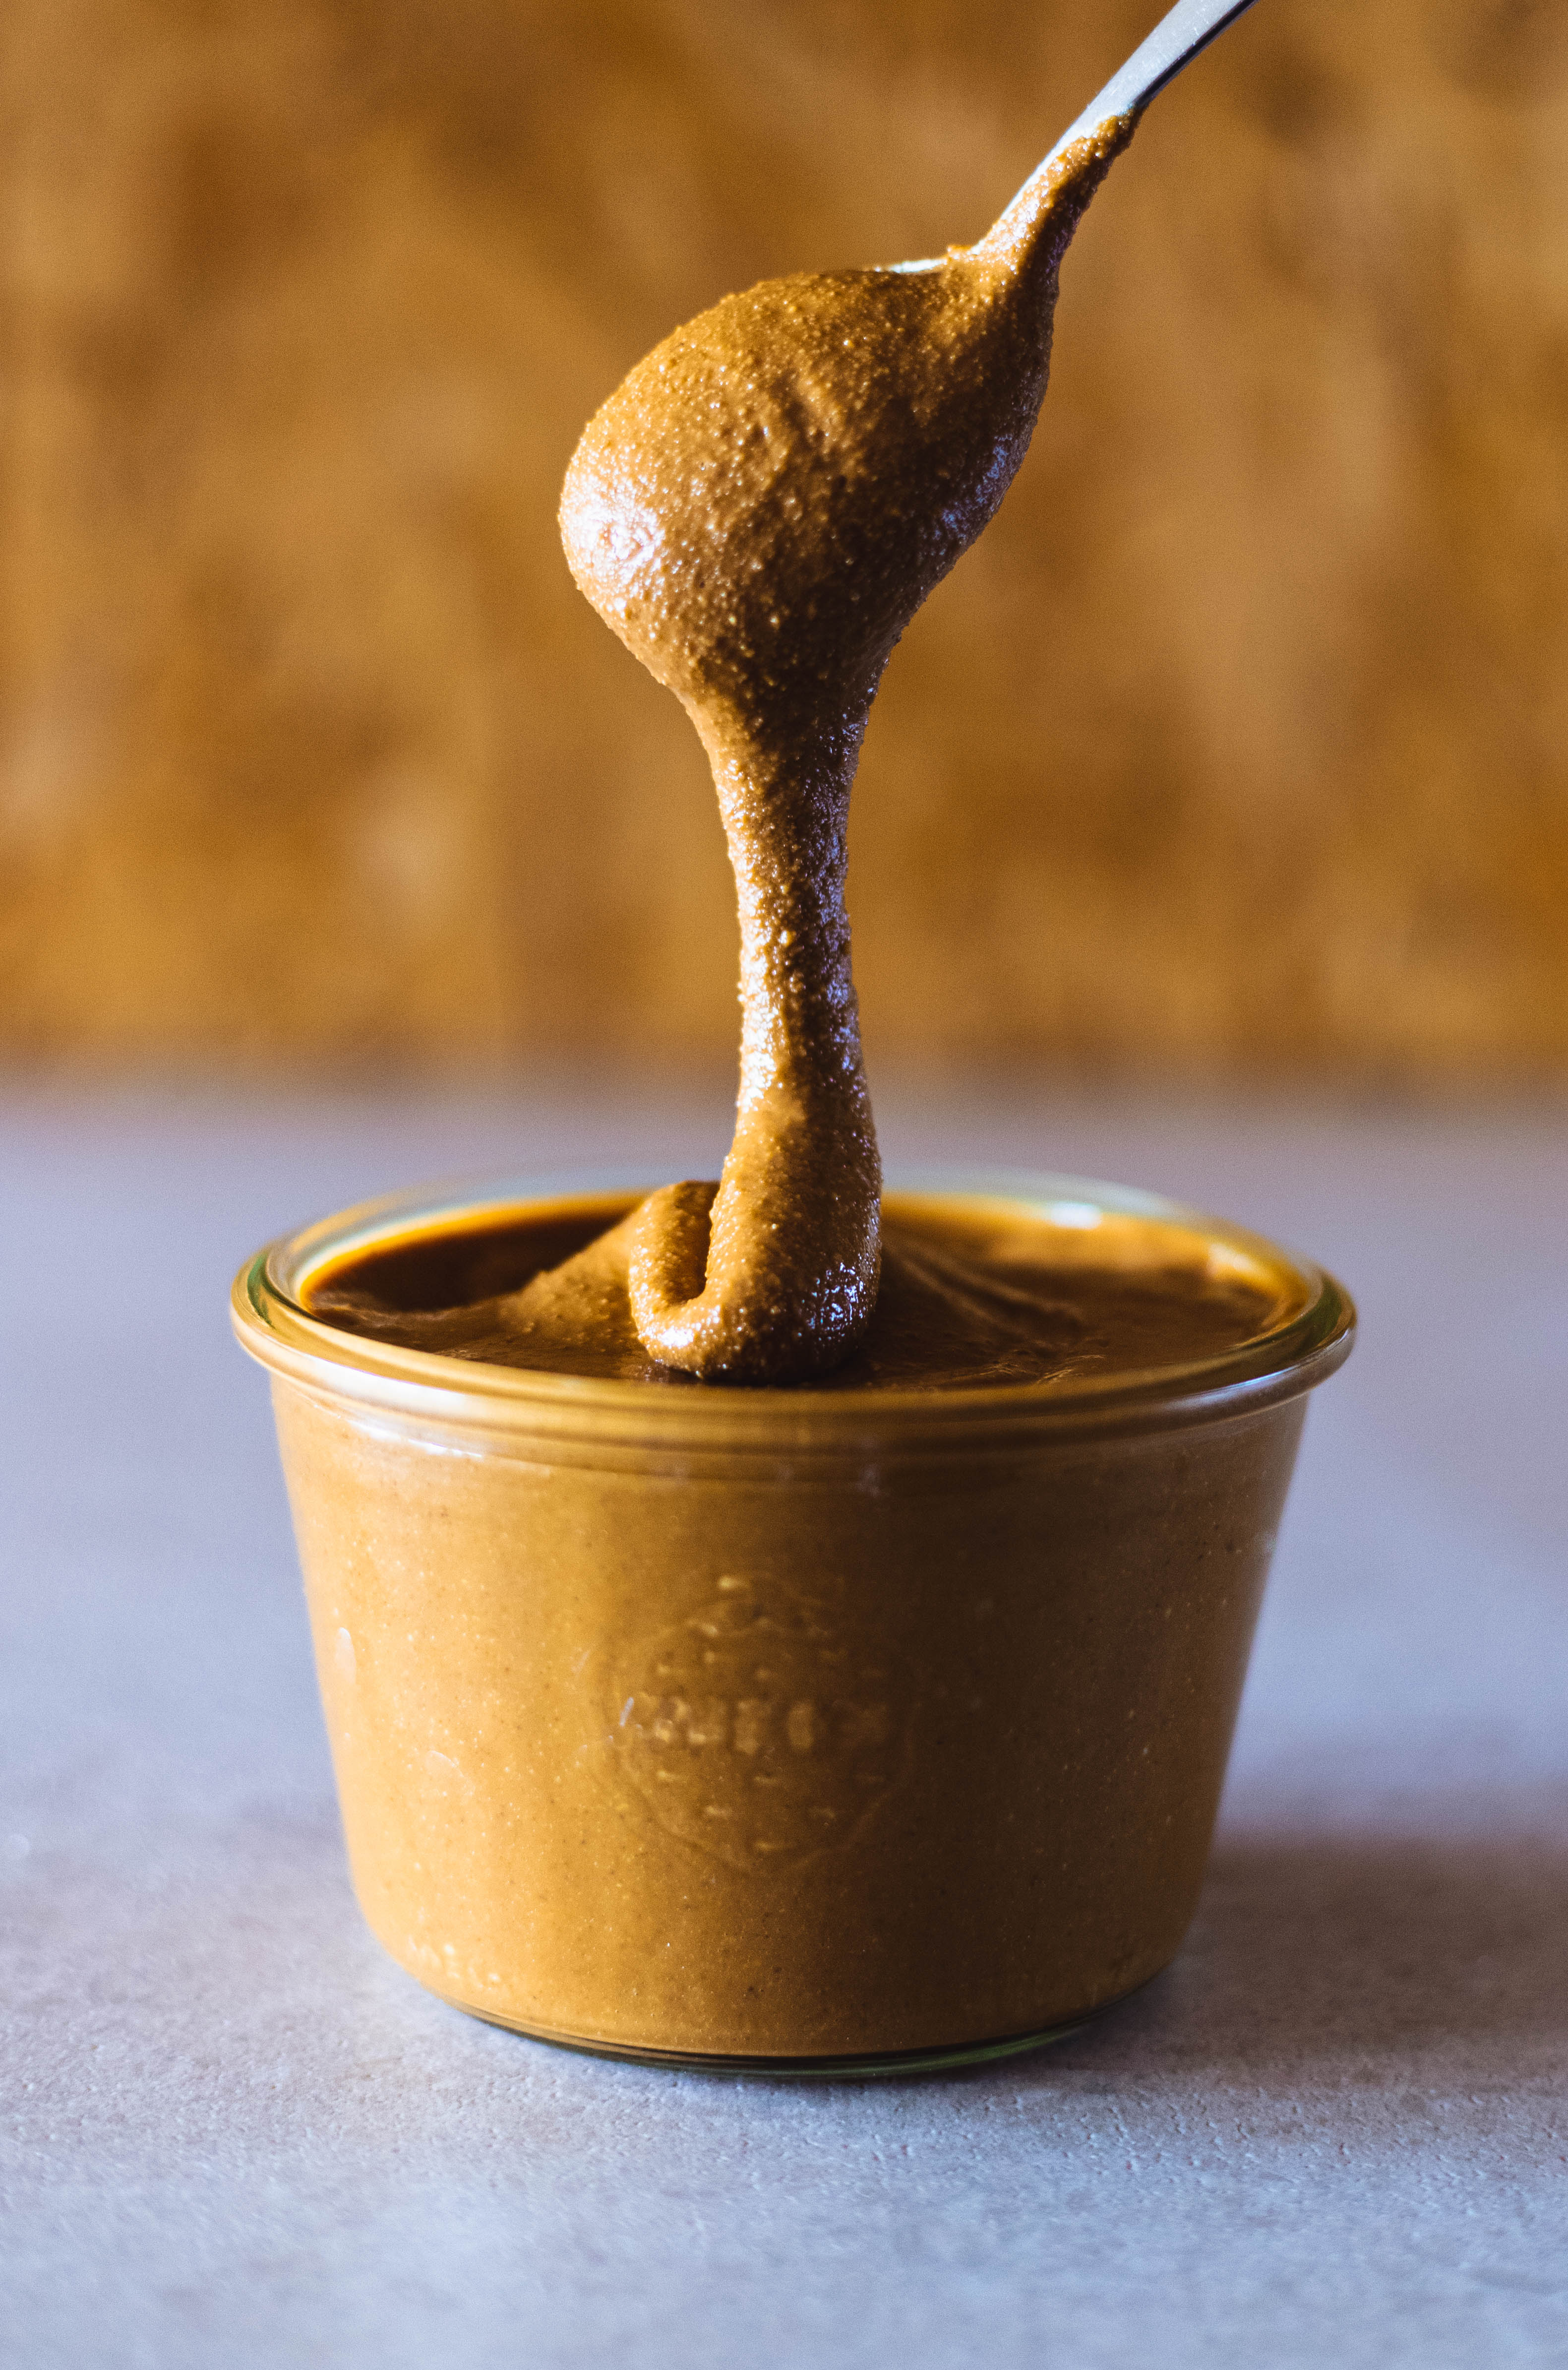 Faire du beurre de cacahuète maison : matériel et recette - Pâtisserie.news